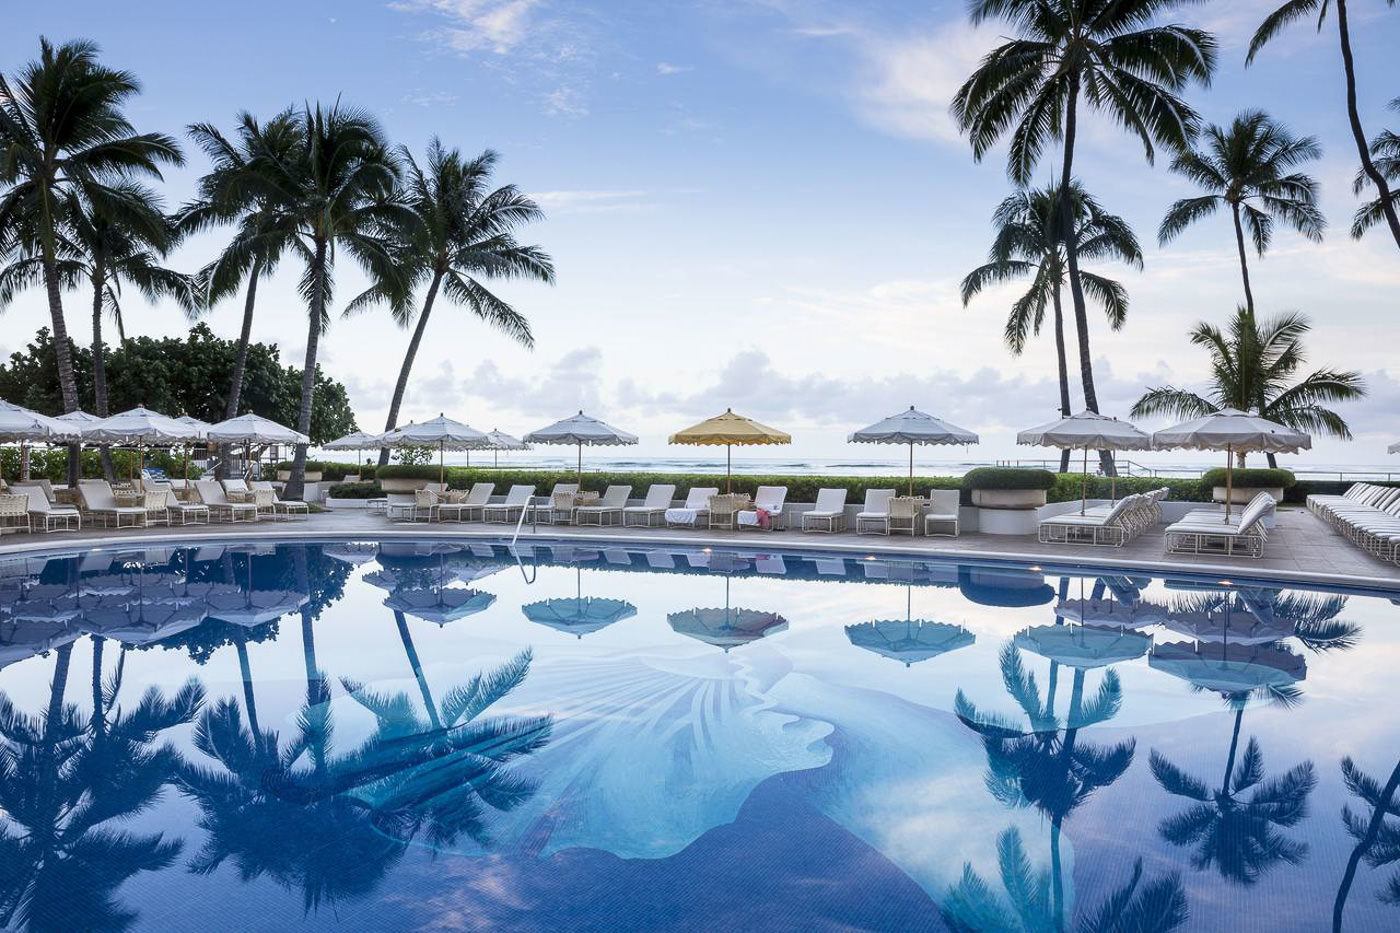 The 10 Cheapest Hotels In Waikiki On Oahu, Hawaii